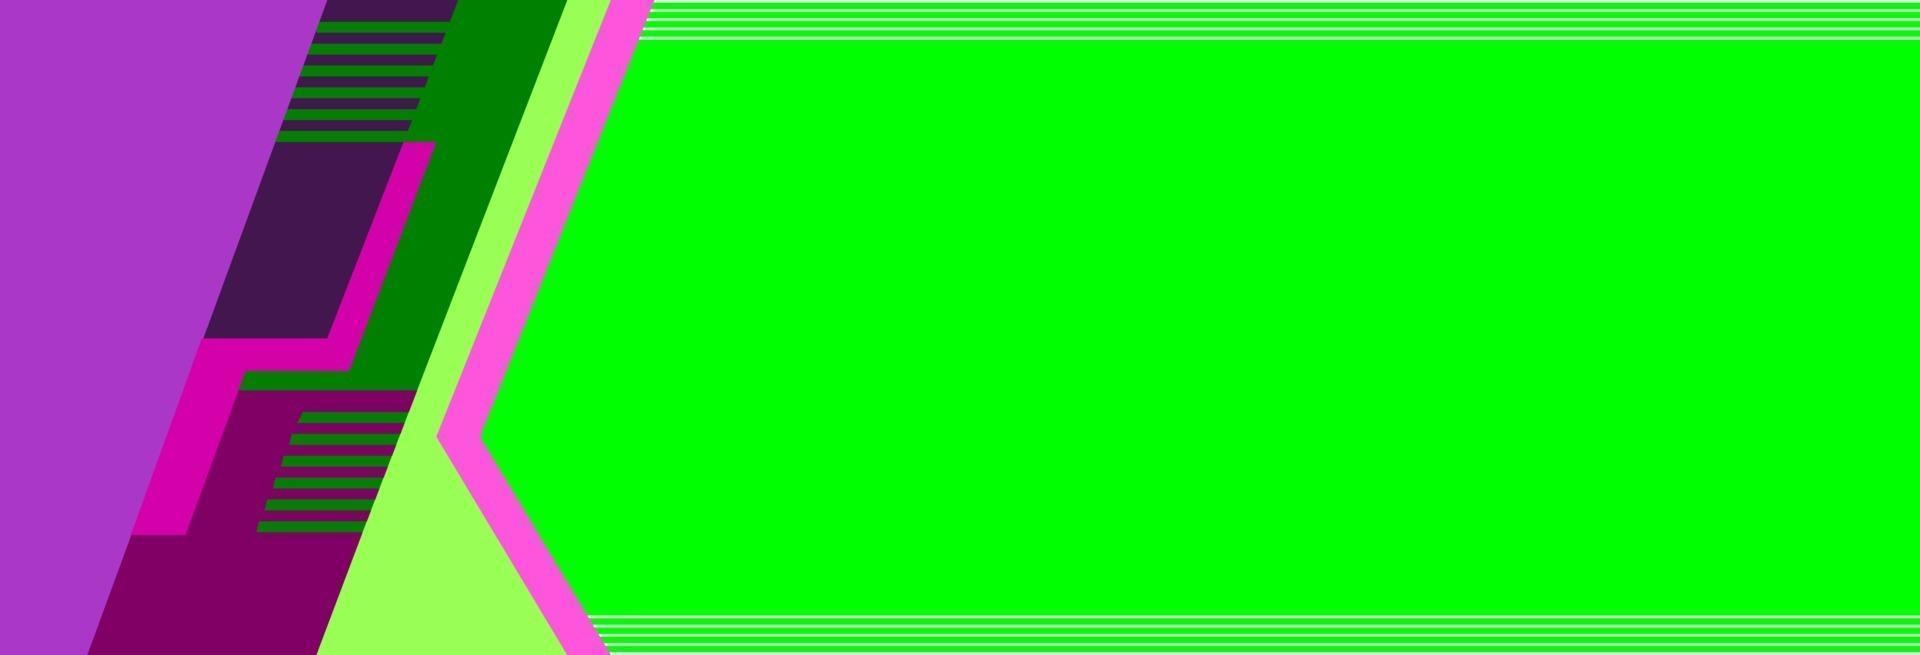 grön banderoll med lila remsor prydnad vektor